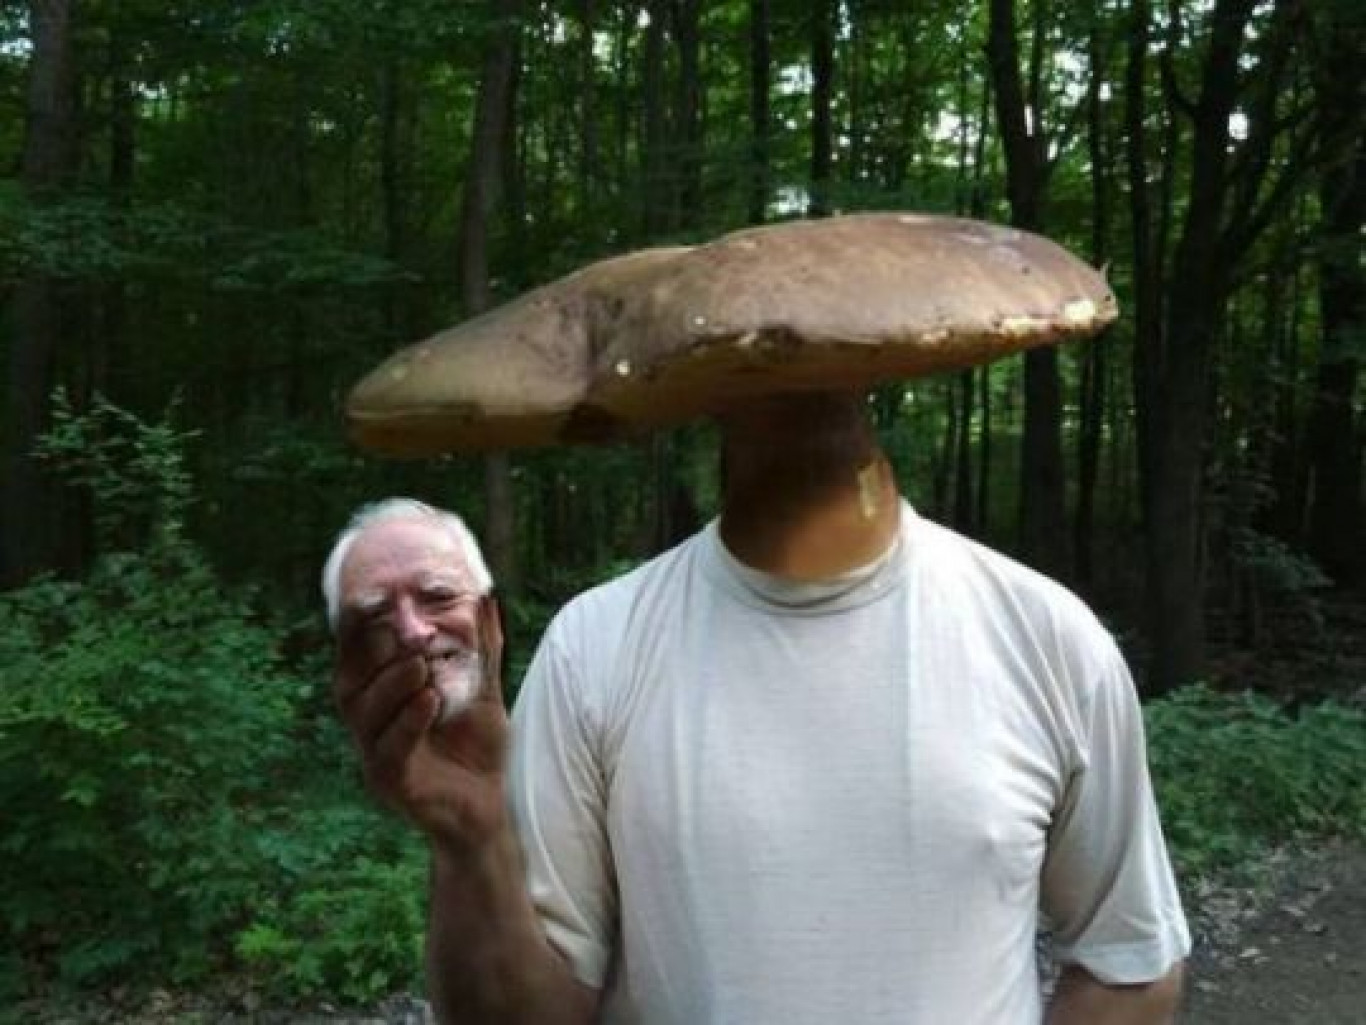 грибы смешные картинки